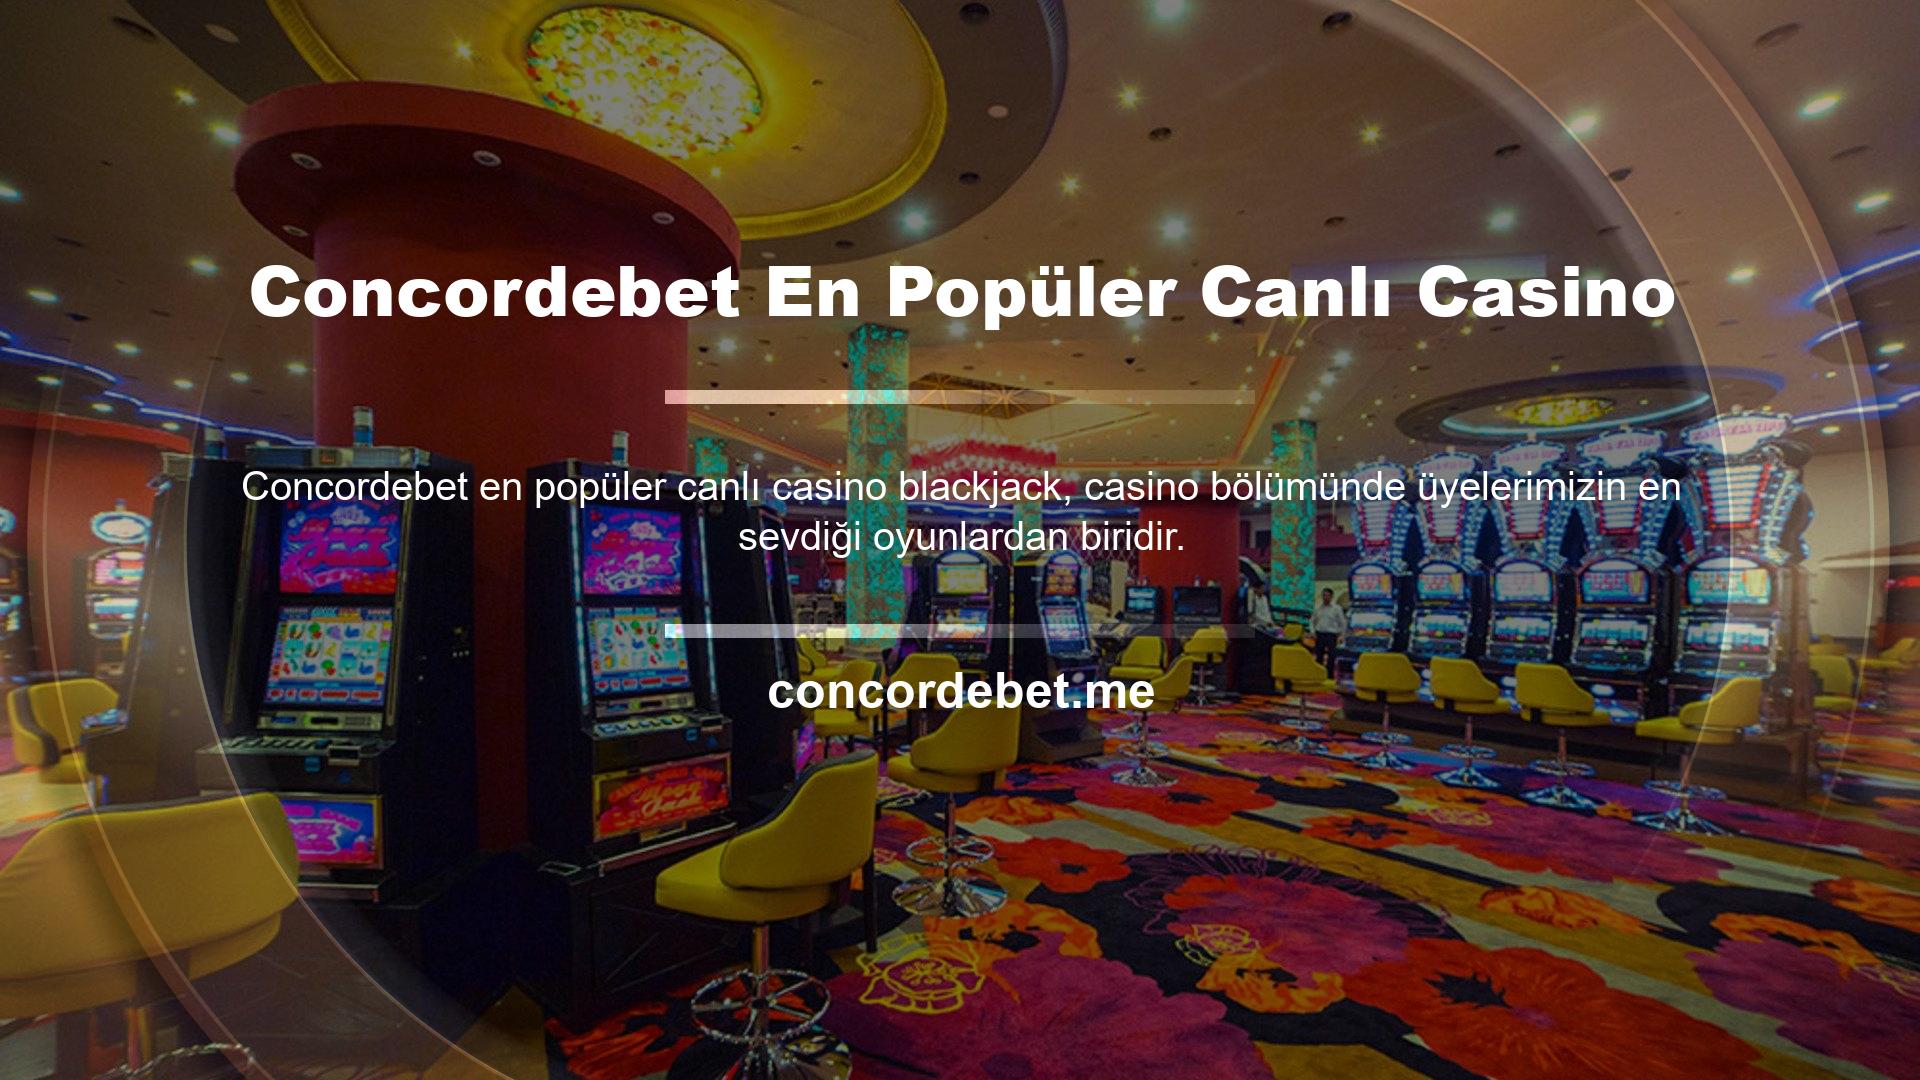 Concordebet web sitesinde yer alan kavis ile blackjack oyunu, casino tutkunları için sonsuz eğlence sunuyor